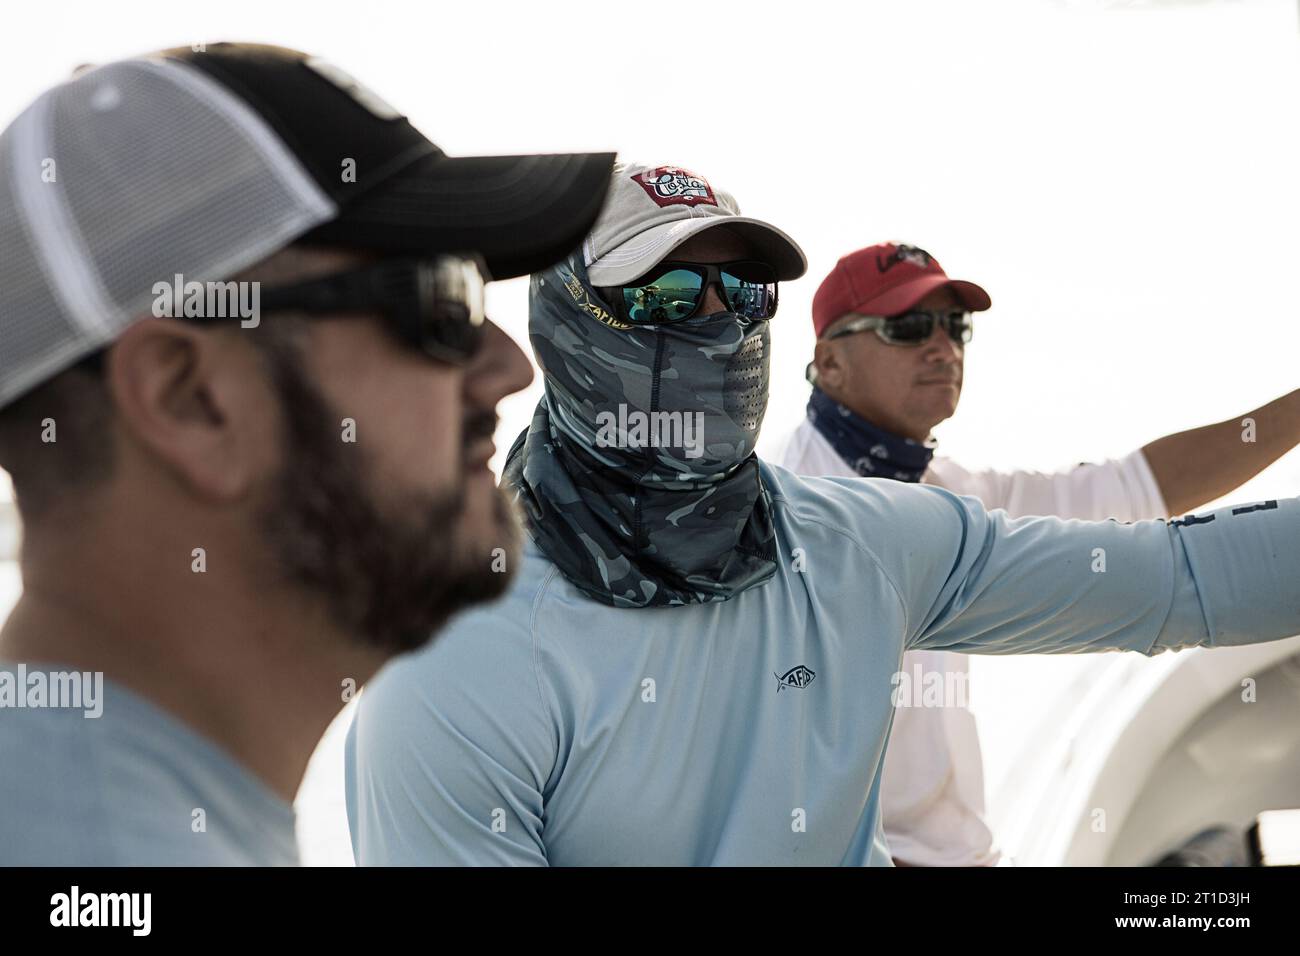 Trois pêcheurs avec des lunettes de soleil regardent l'eau. Banque D'Images